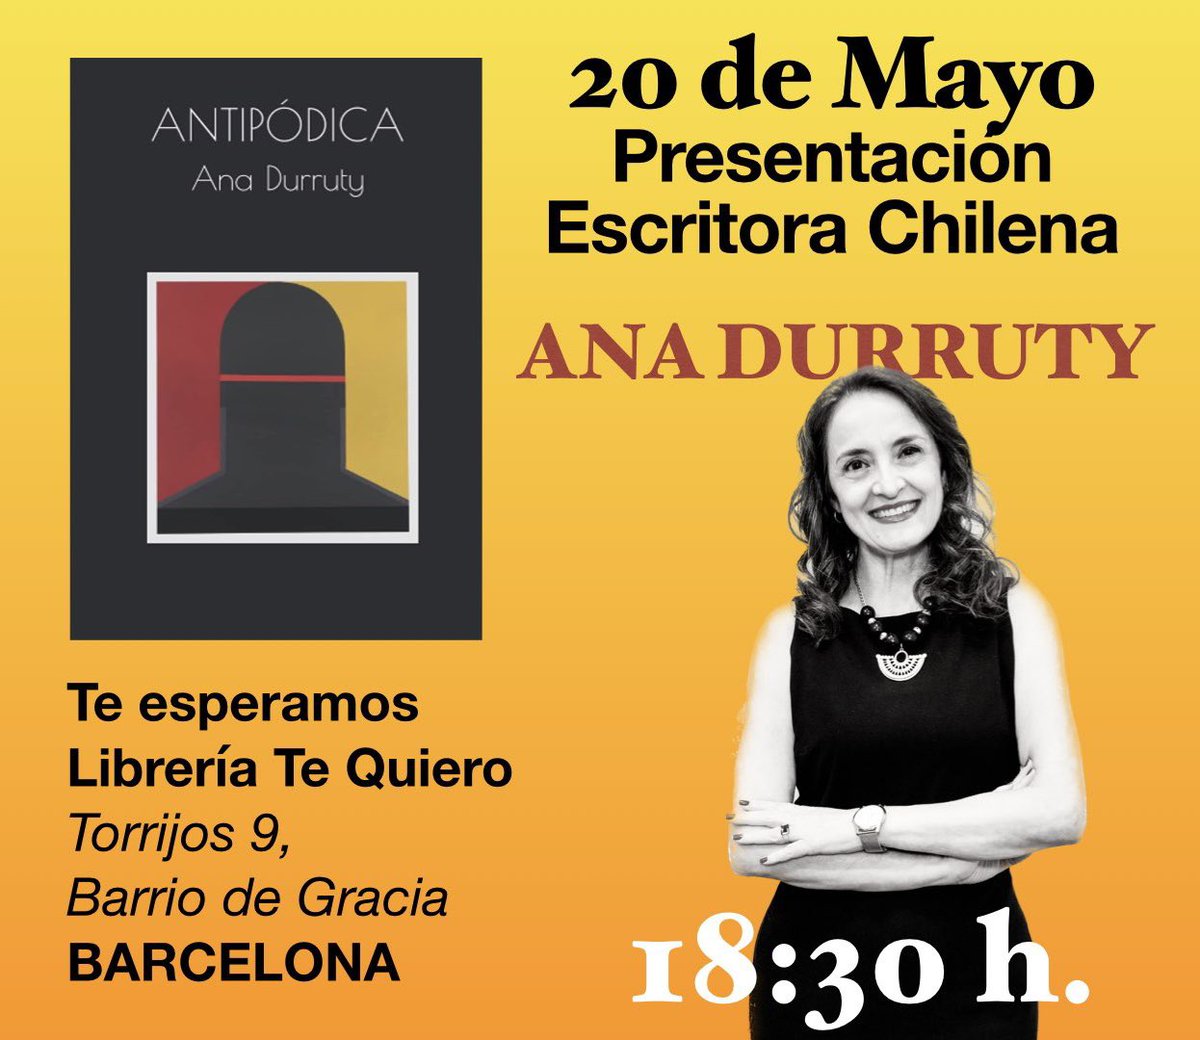 instagram.com/stories/anadur… #presentacionlibro #librogram #barcelona #escritorachilena 
¡Todos cordialmente invitados! 📚